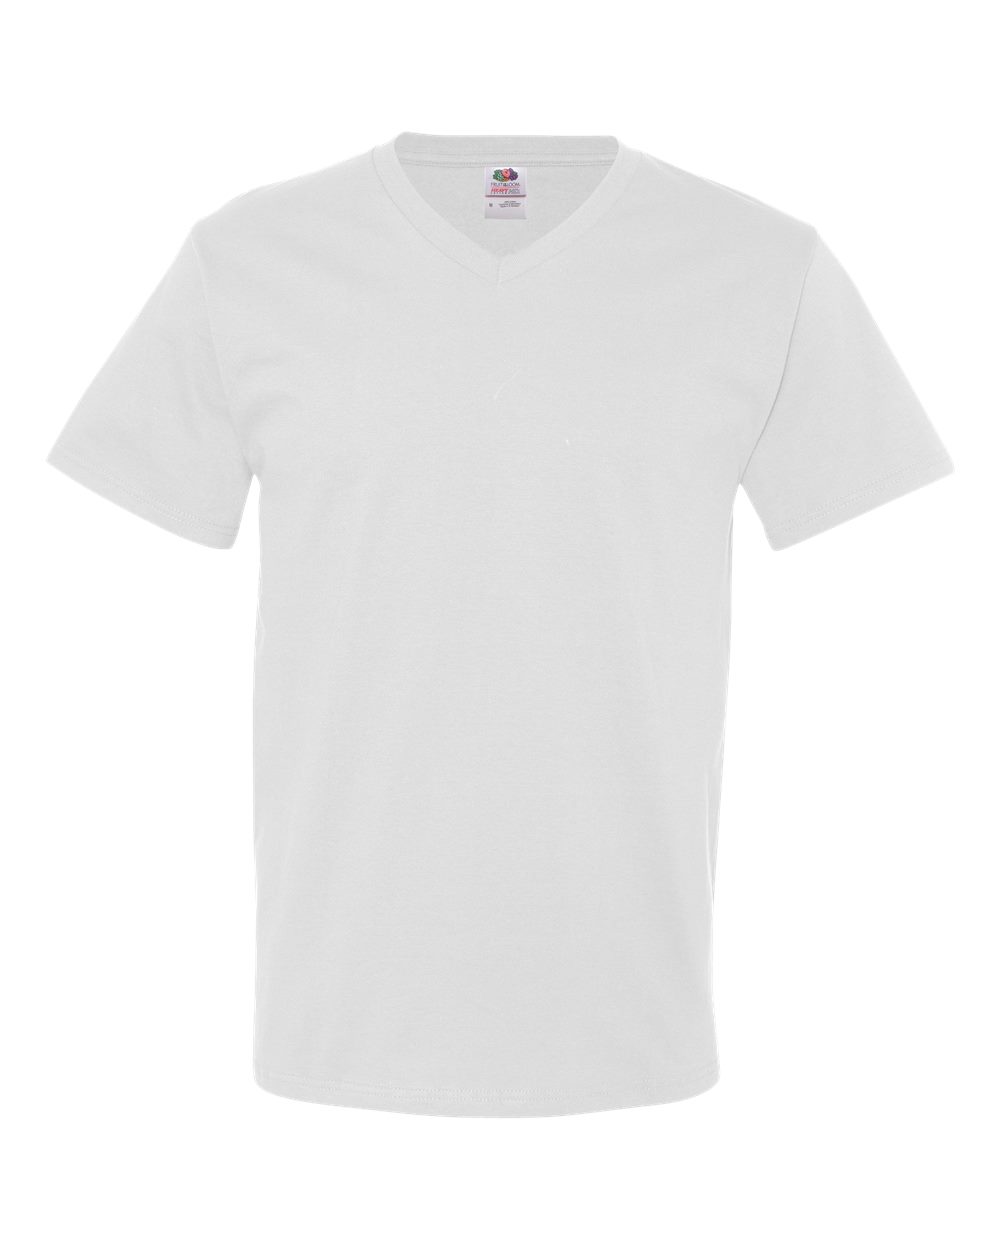 HD Cotton V-Neck T-Shirt - 39VR-